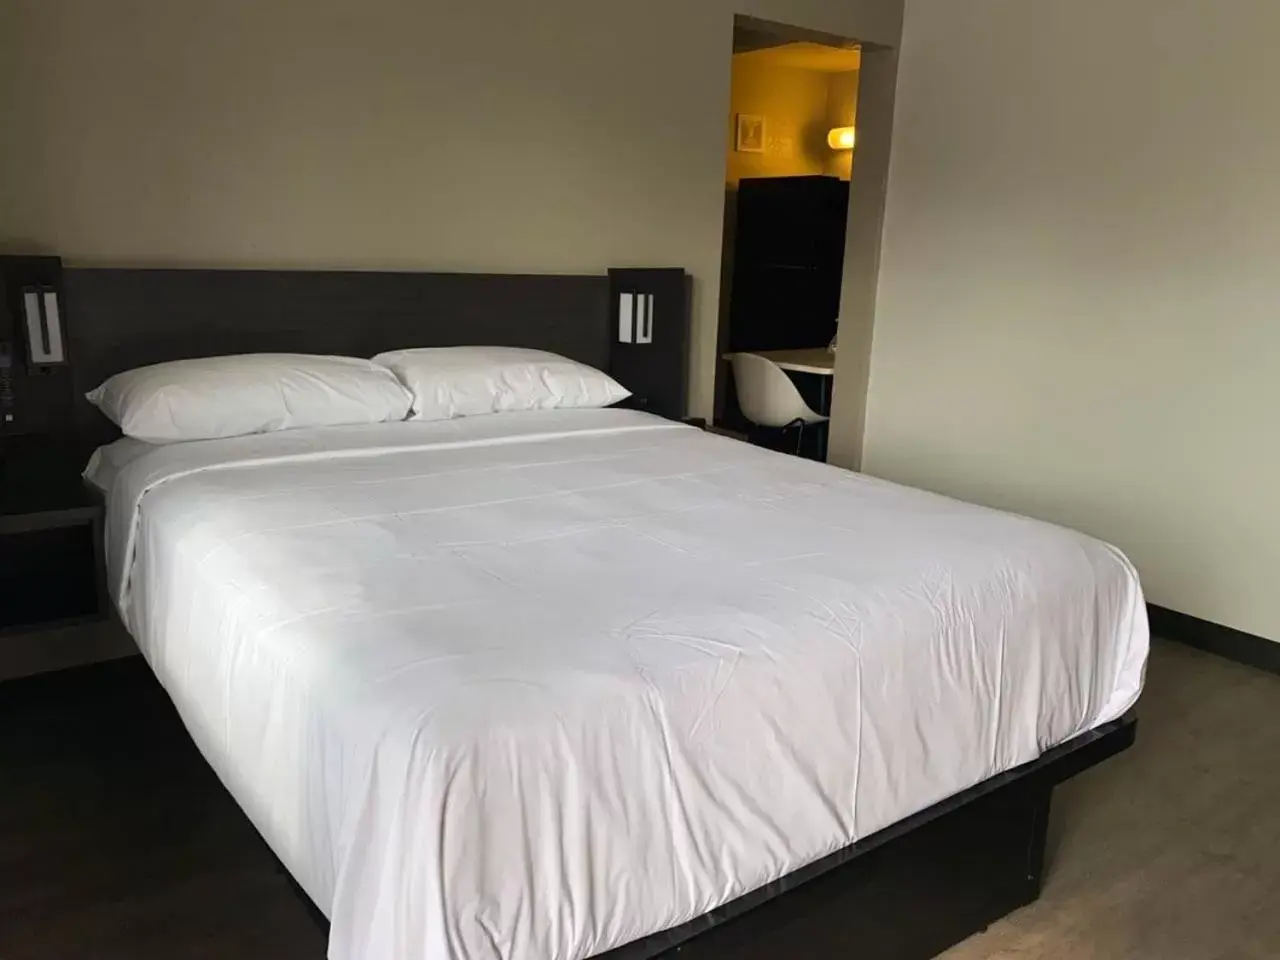 Bed in Albuquerque, NM - Midtown